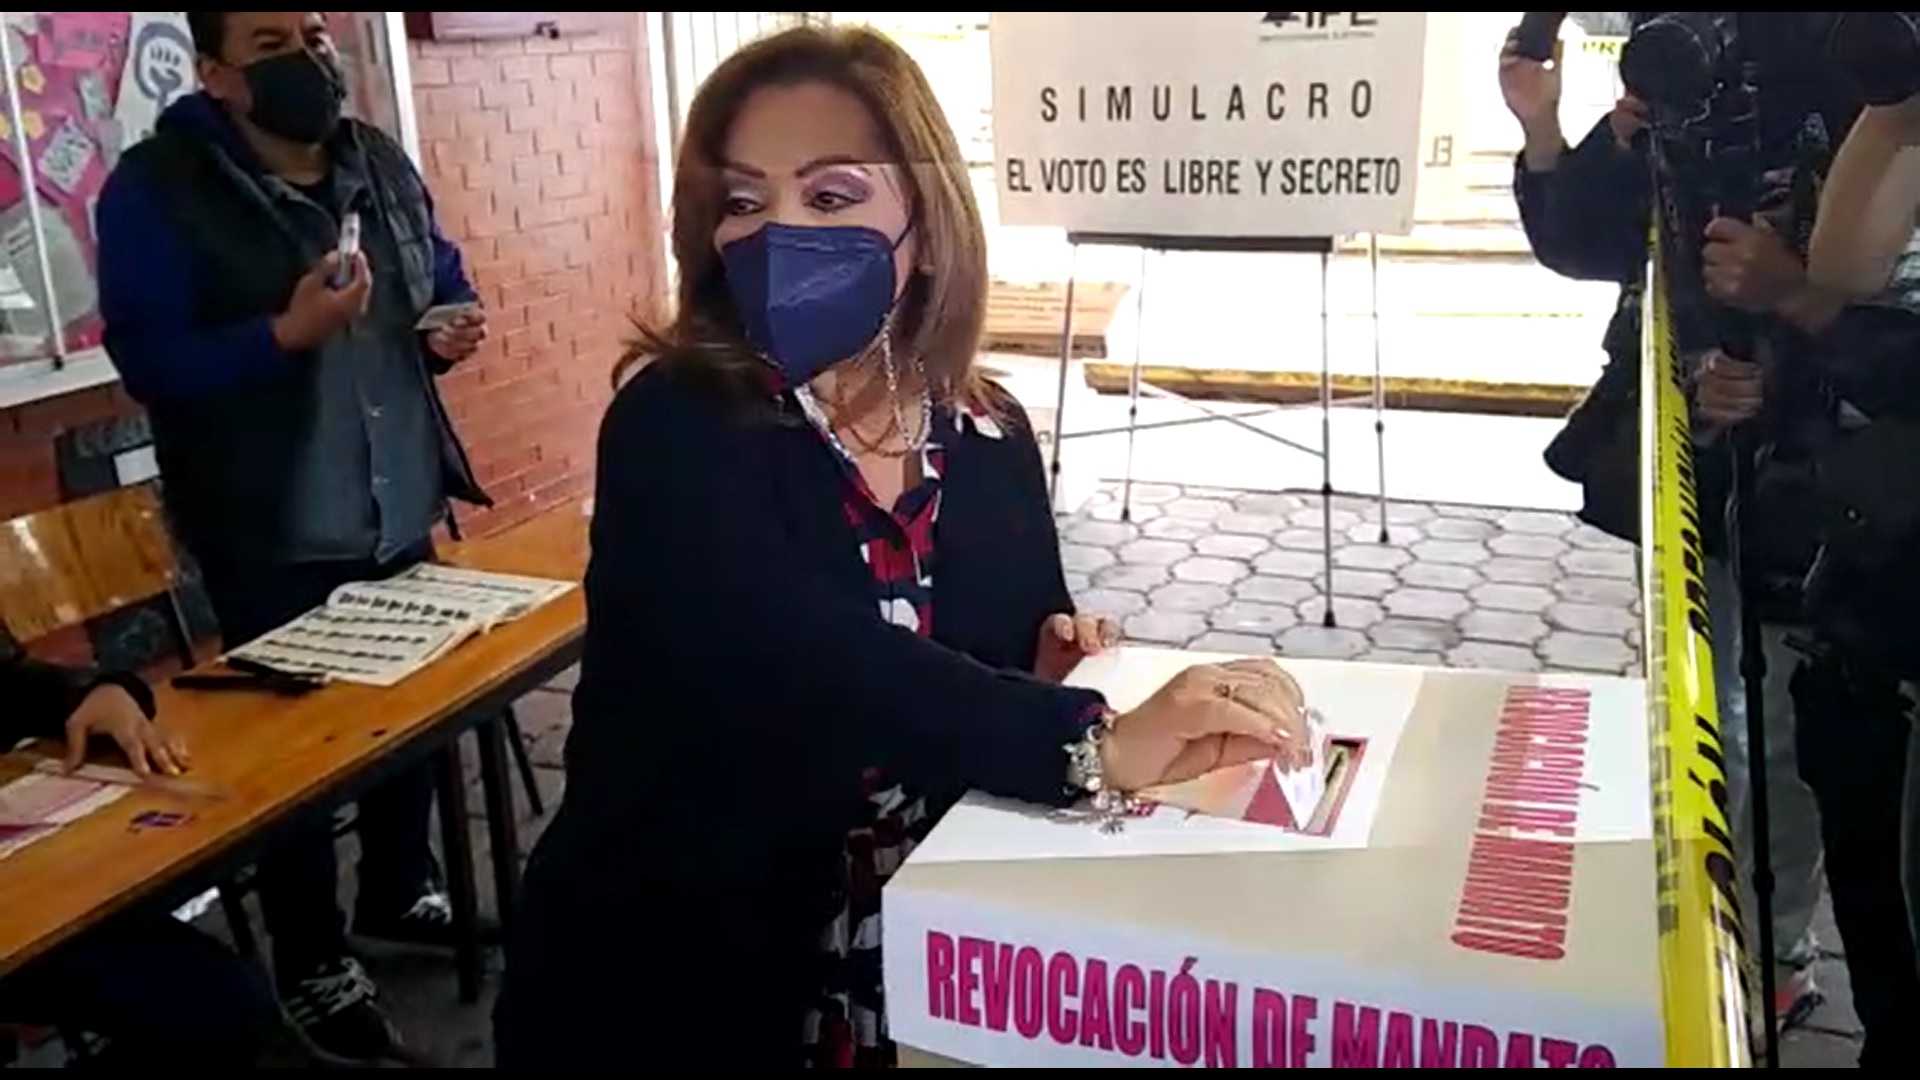 La gobernadora de Tlaxcala, Lorena Cuéllar Cisneros, votó está mañana en la primera consulta de #RevocaciónDeMandato en la historia del país.